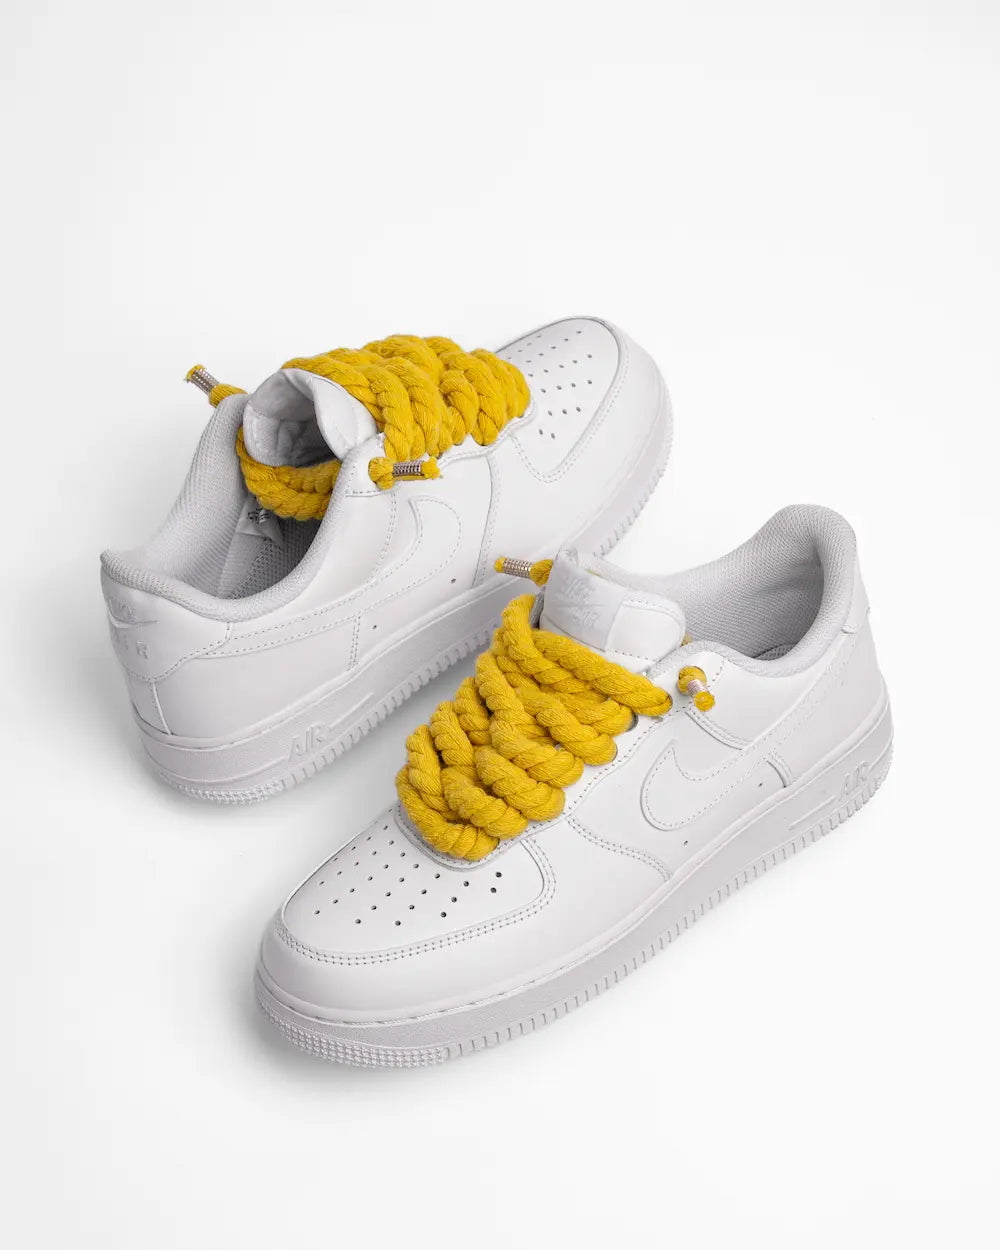 Nike Air Force 1 bianca personalizzata con lacci in corda gialli